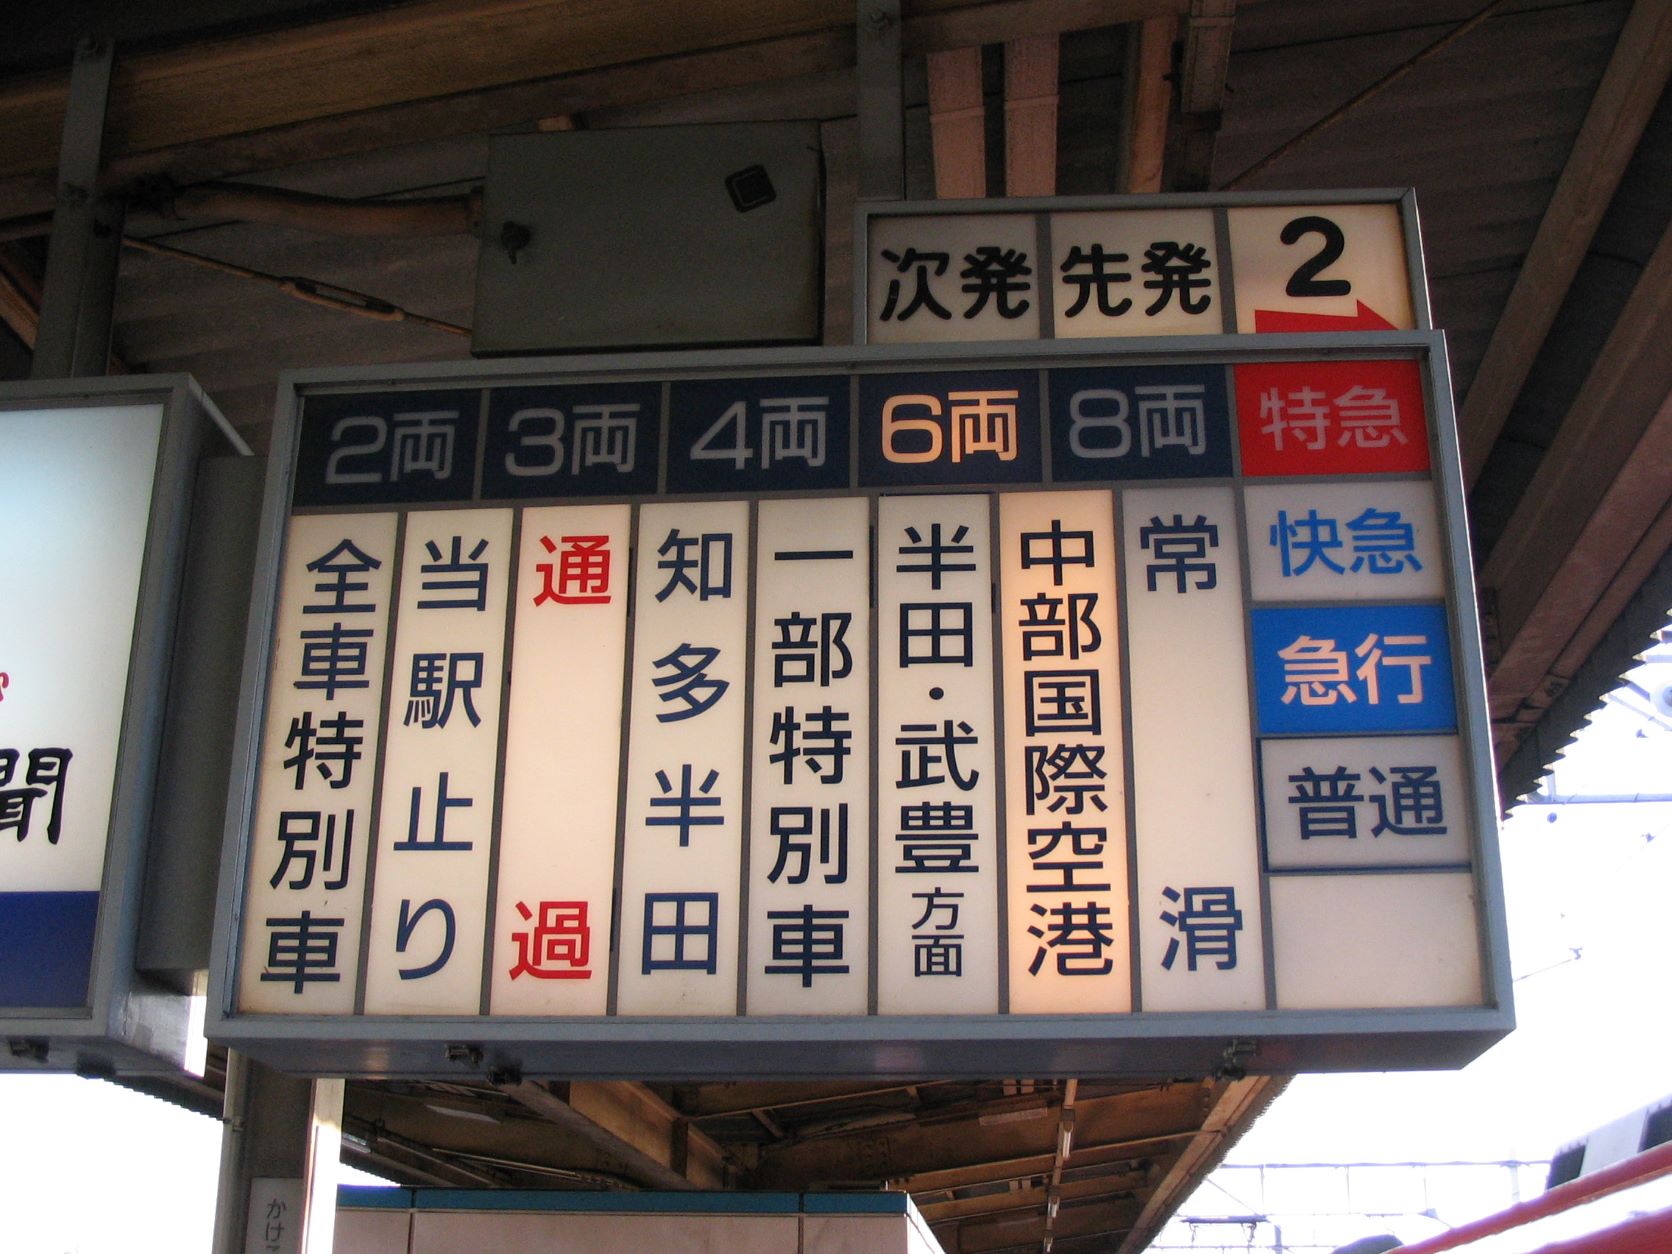 地平時代の太田川駅の行灯式の発車案内装置